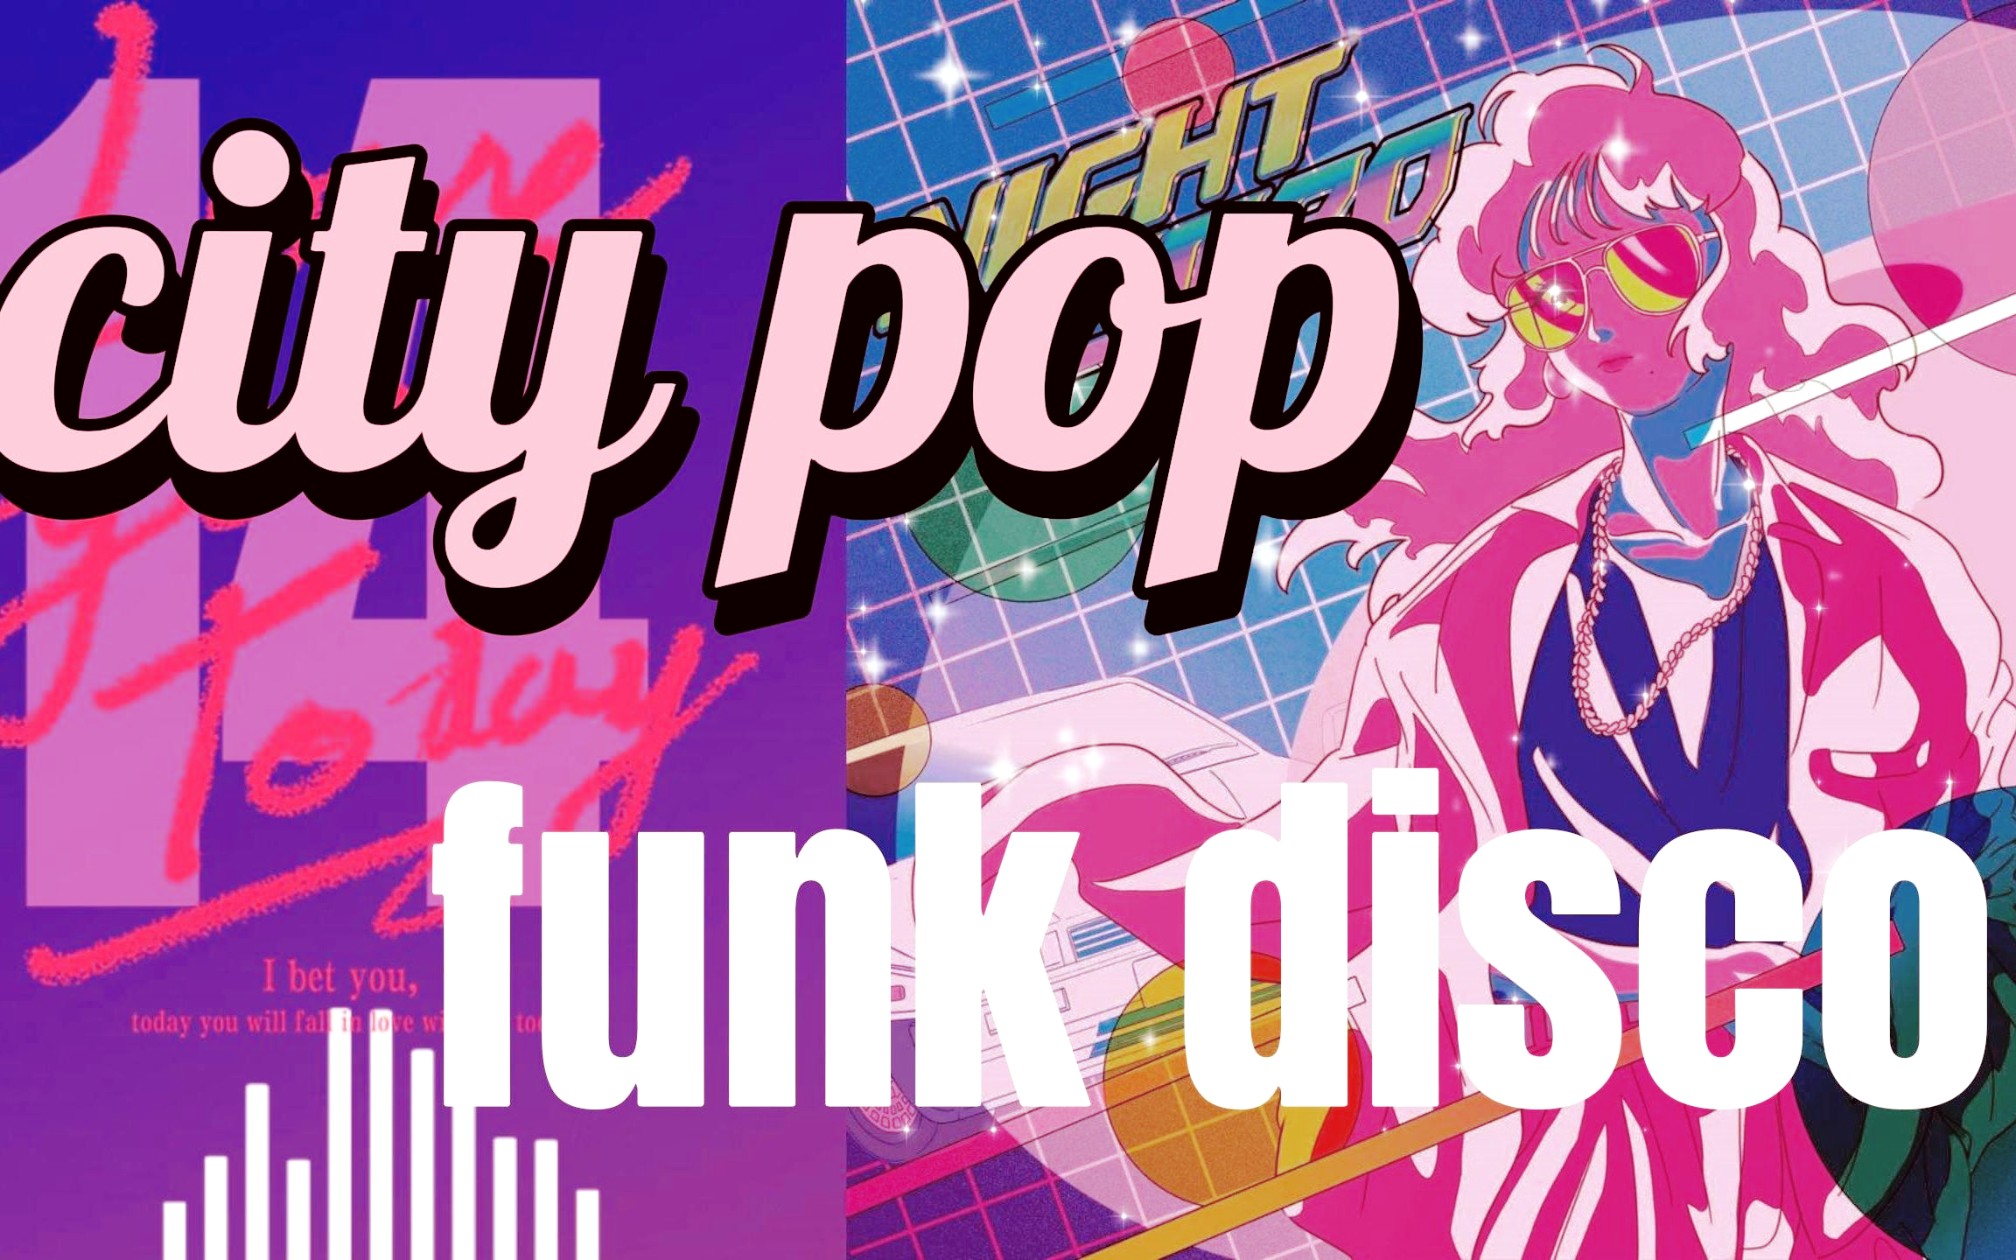 小时复古之声蒸汽波电台vaporwave丨city pop丨funk丨 东京都市夜未眠